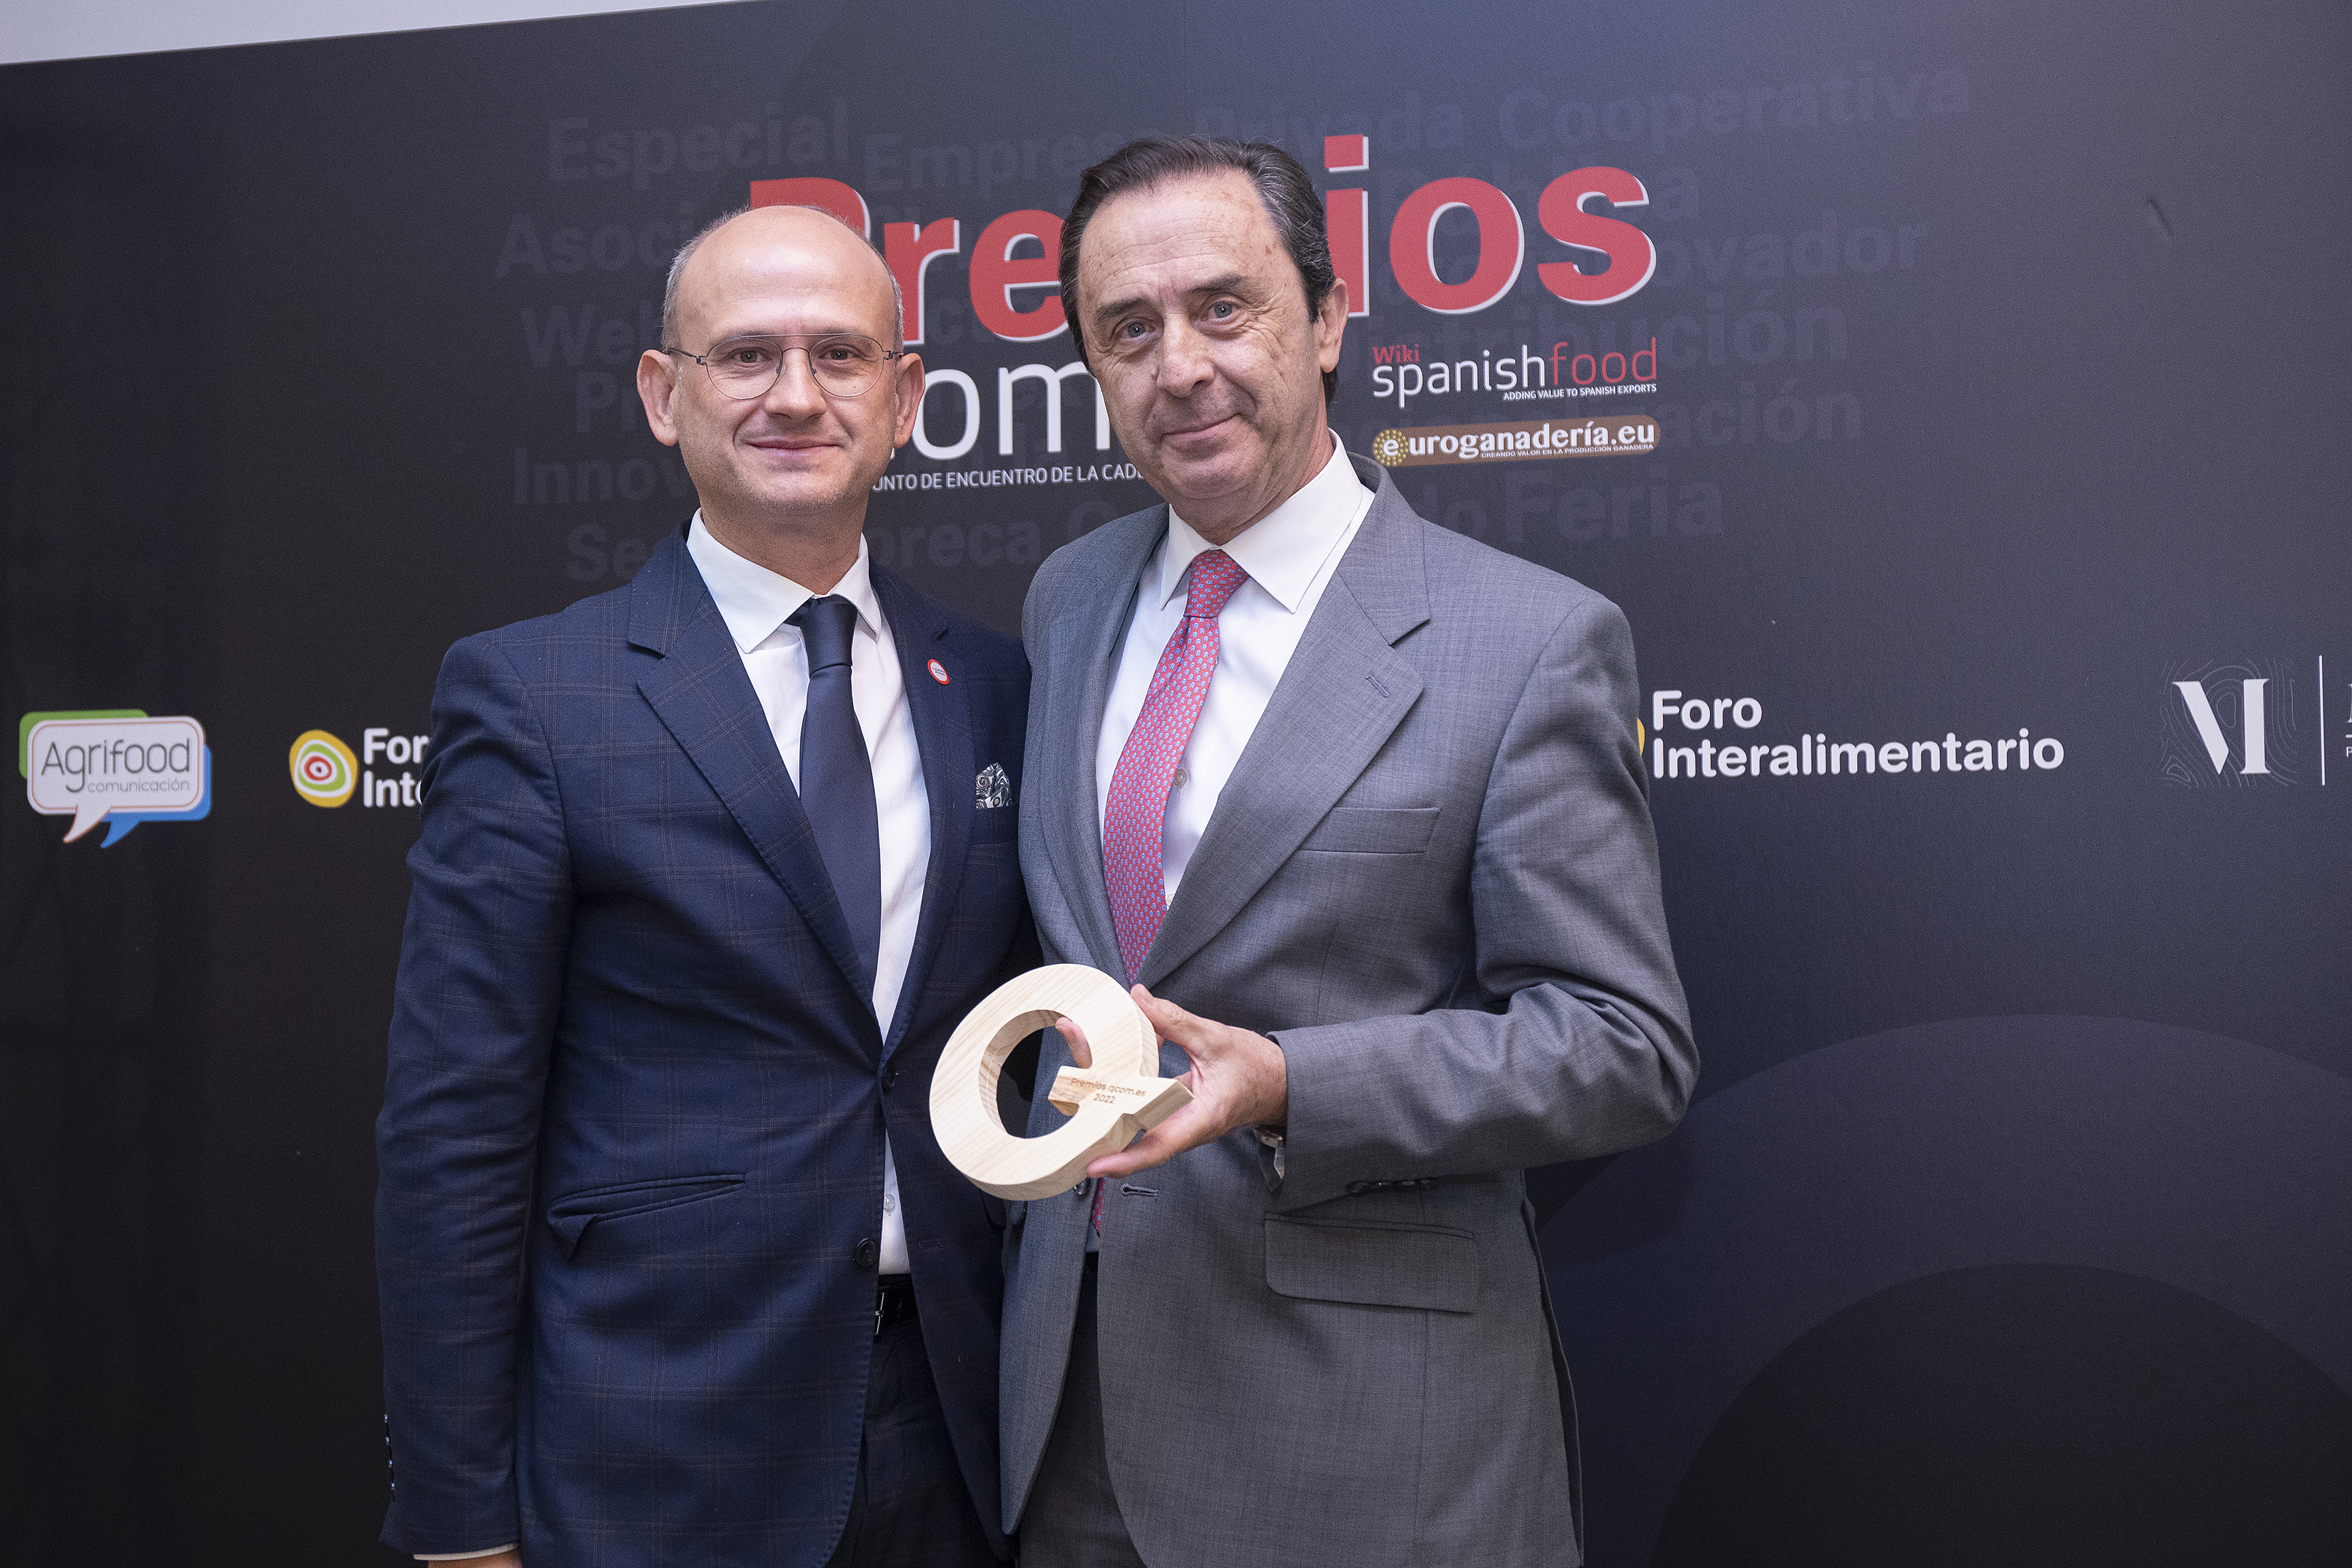 Premio a la innovación en internacionalización